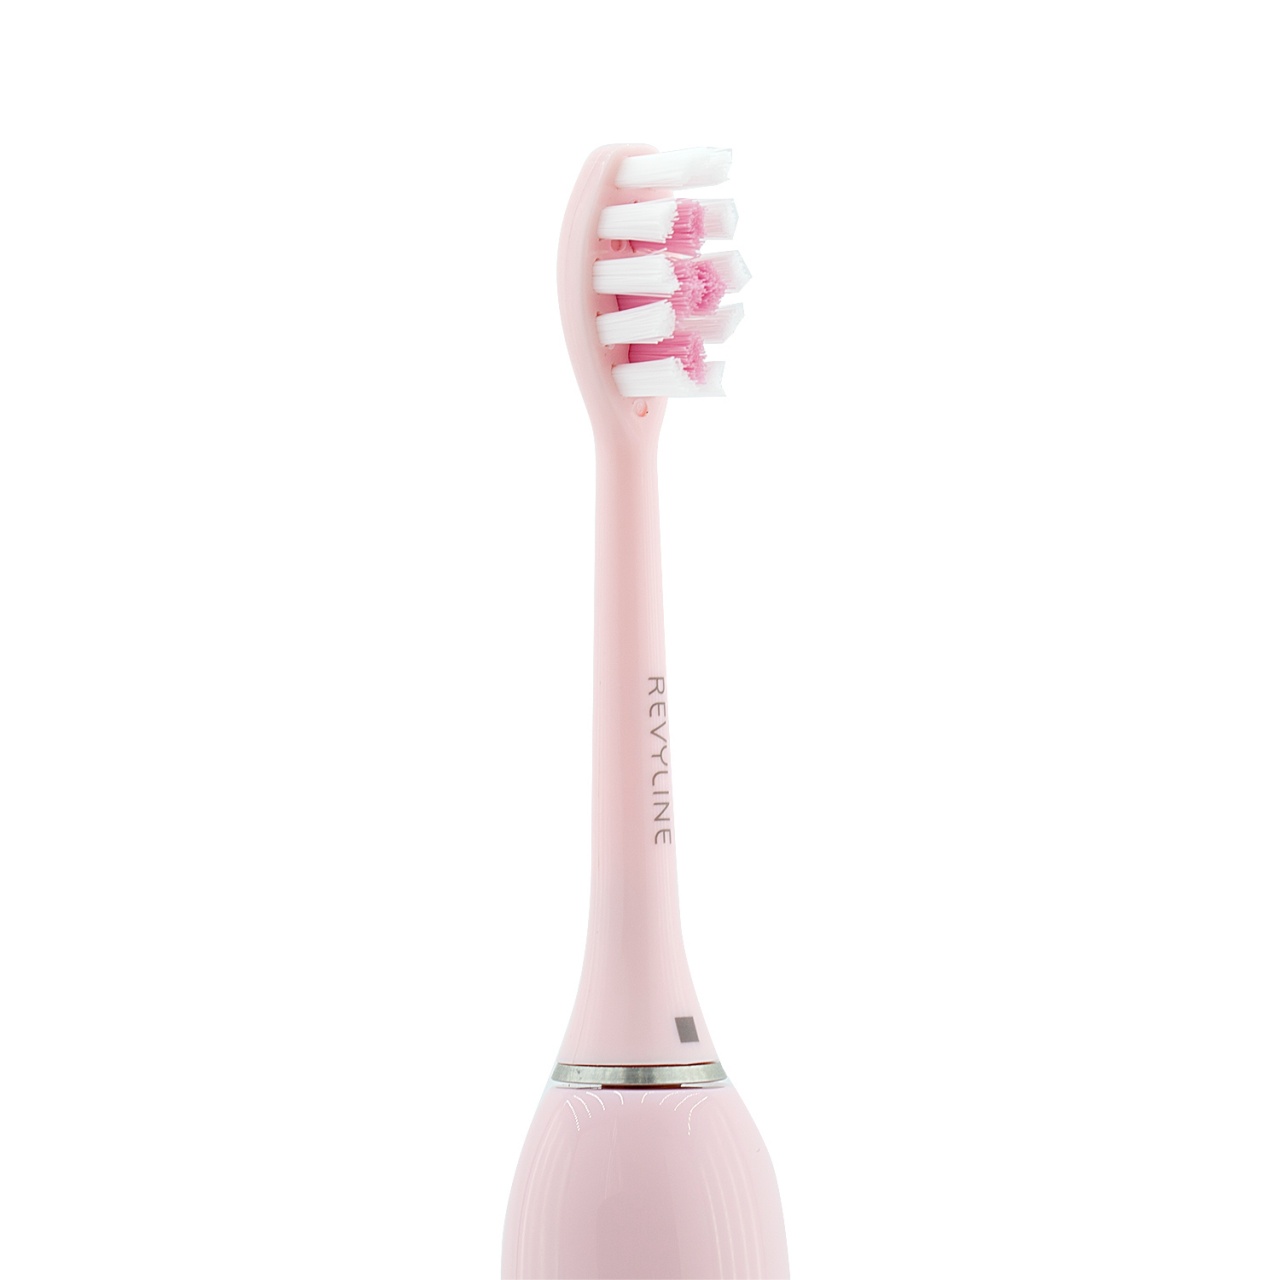 Электрическая зубная щетка Revyline RL 010 розовая